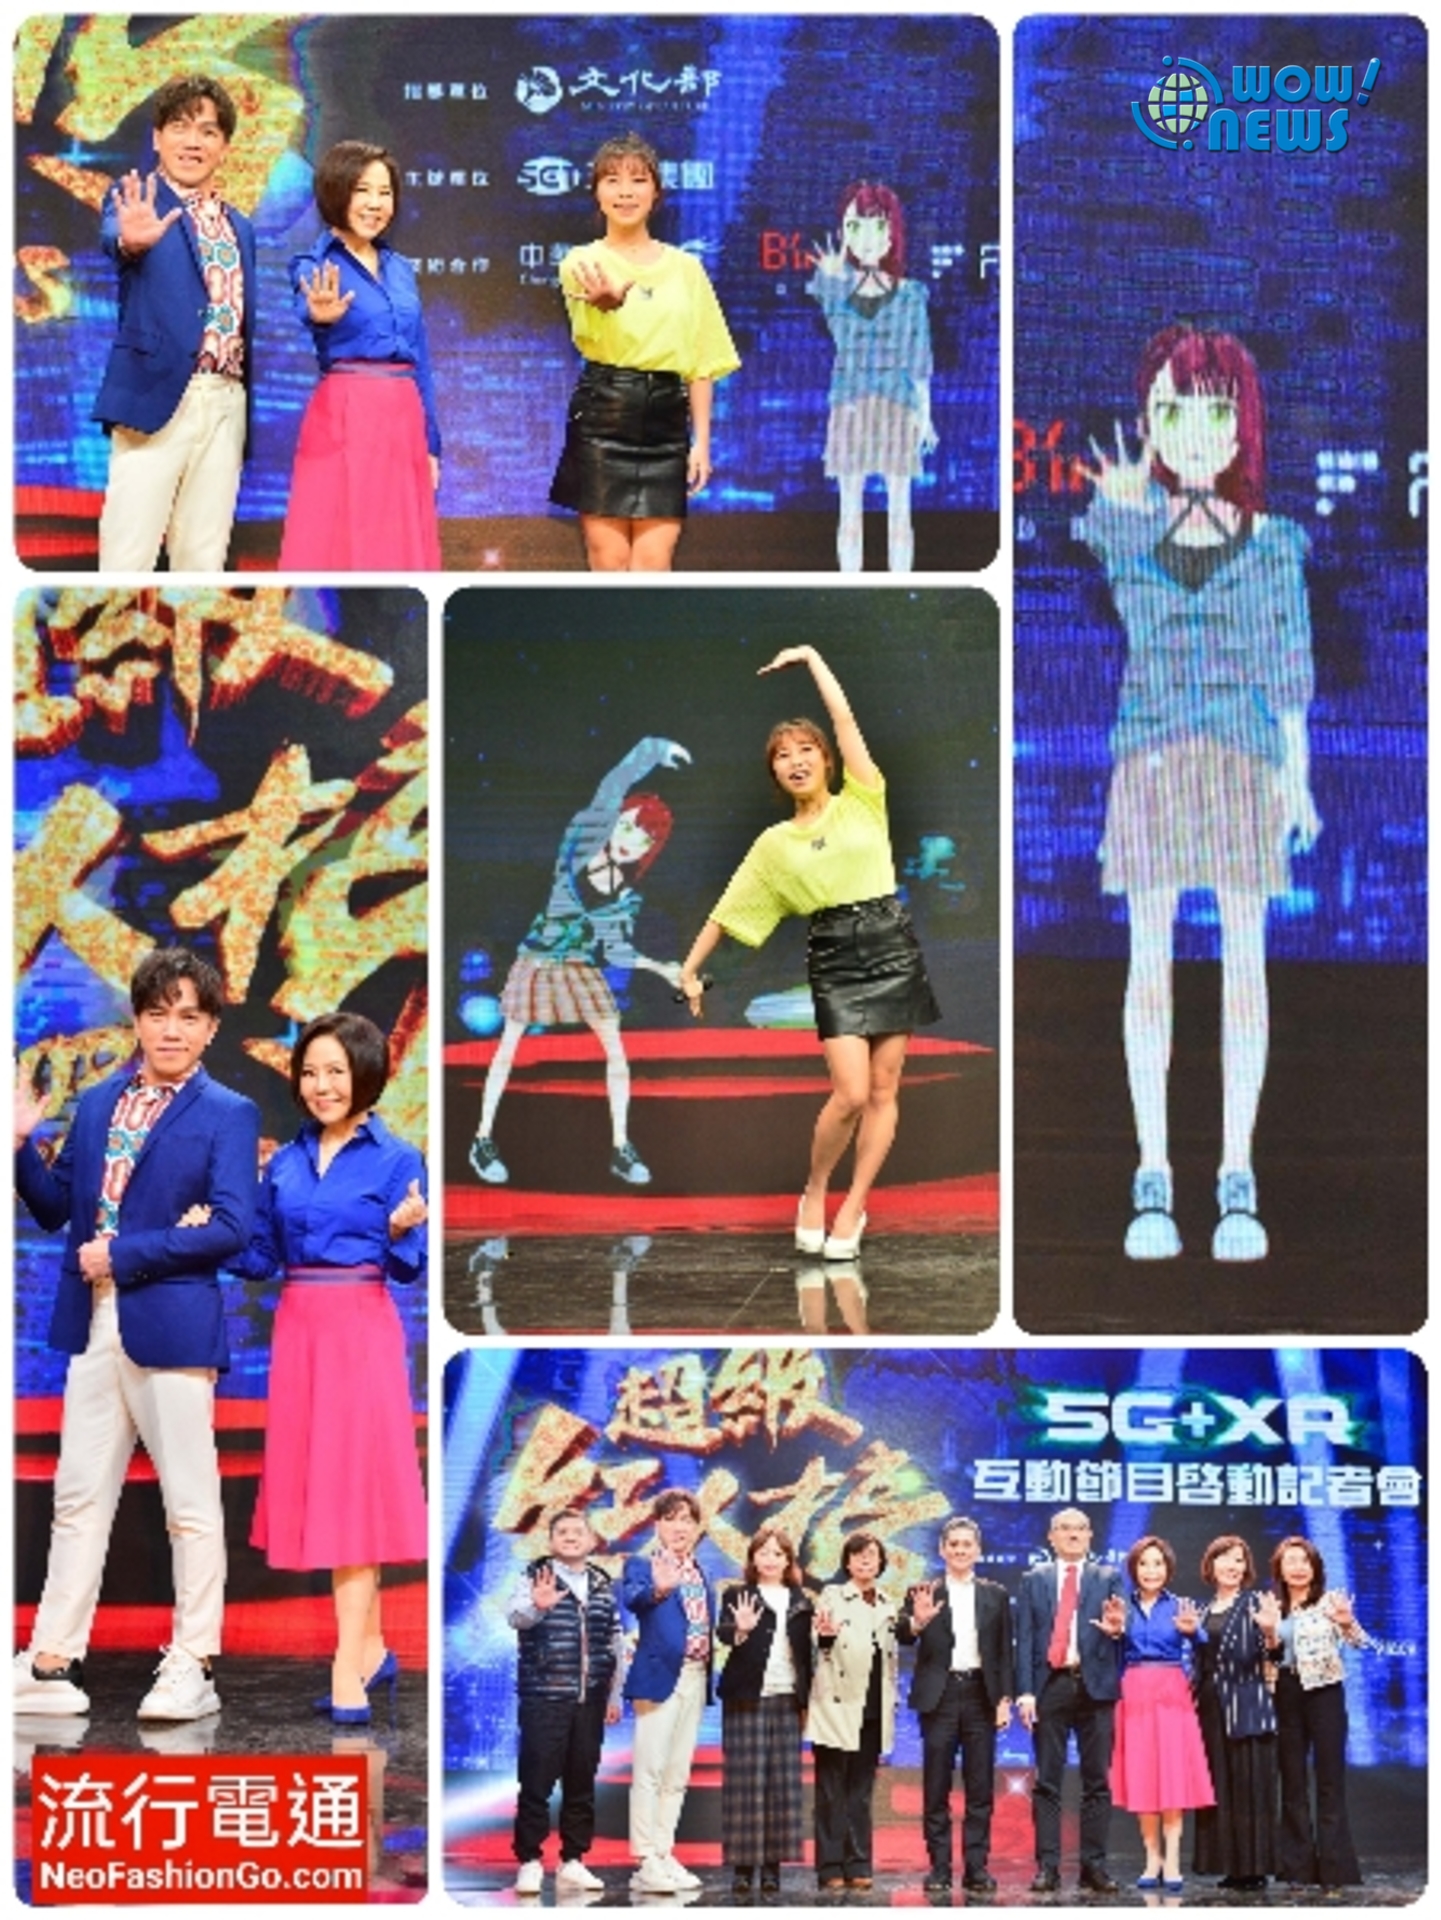 三立《超級紅人榜》選秀節目「5G+XR節目互動製作」虛擬歌手Aki與紅人榜歌手吳美琳 虛實合作新效果